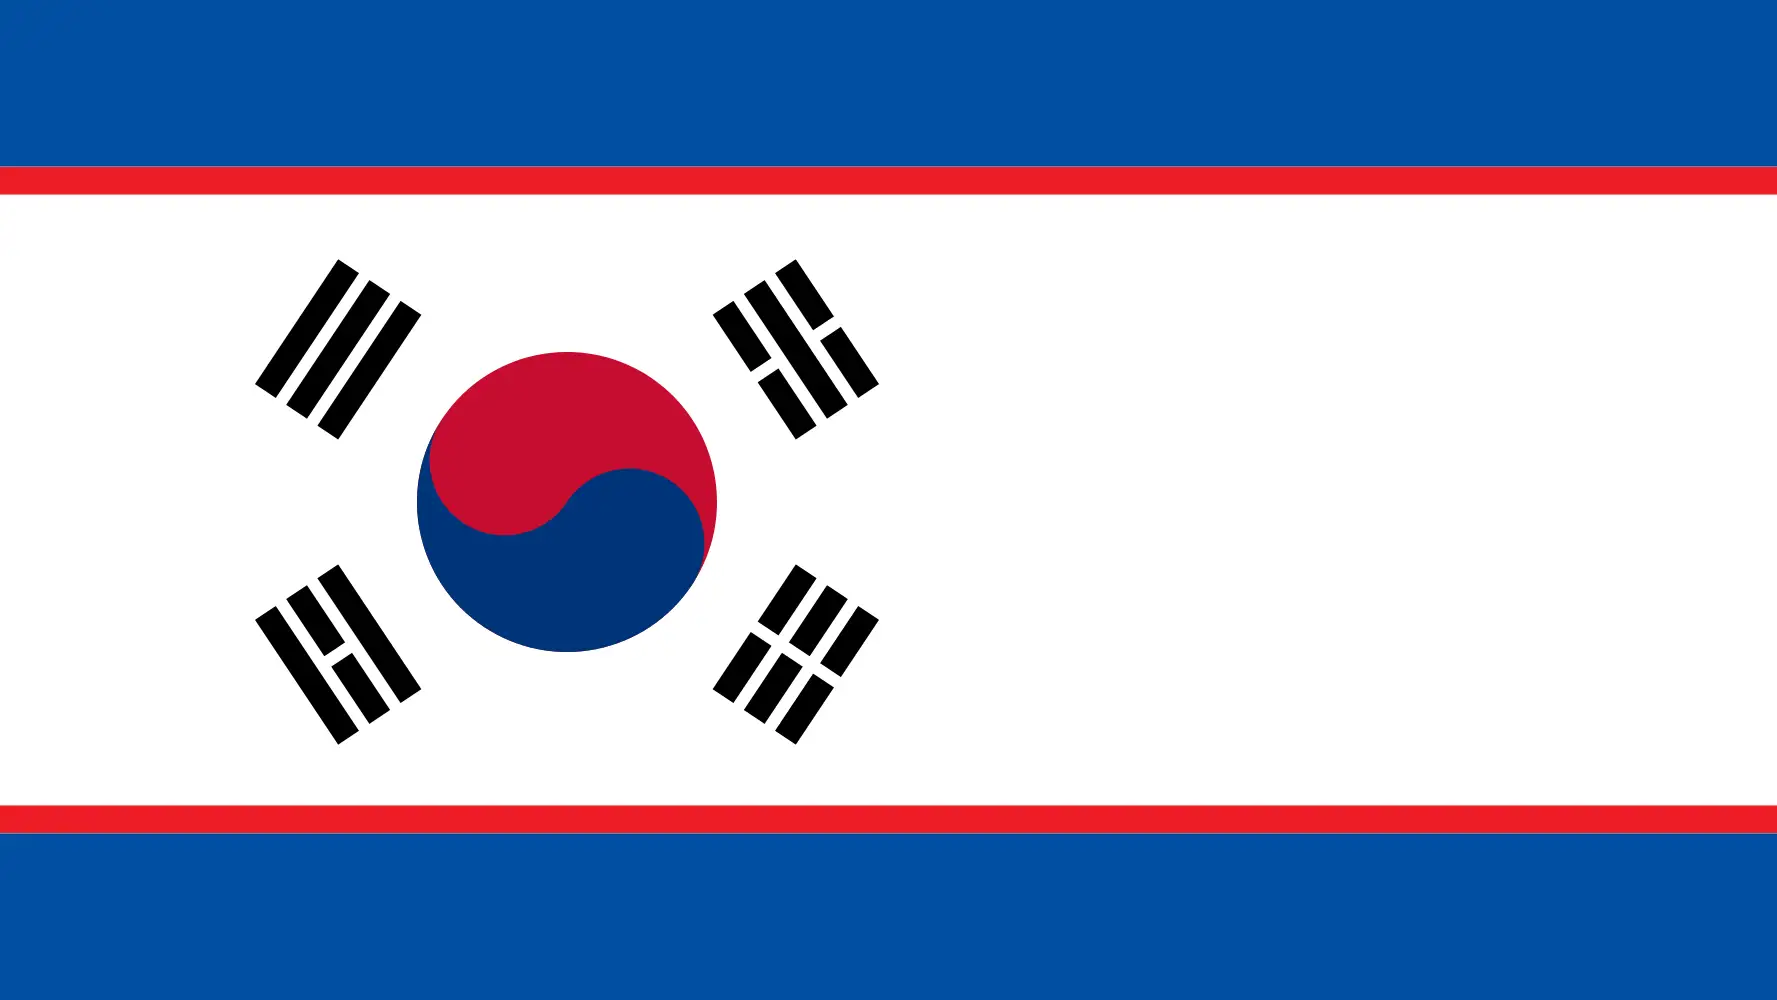 Banderas de Corea del Norte y Corea del Sur mezcladas